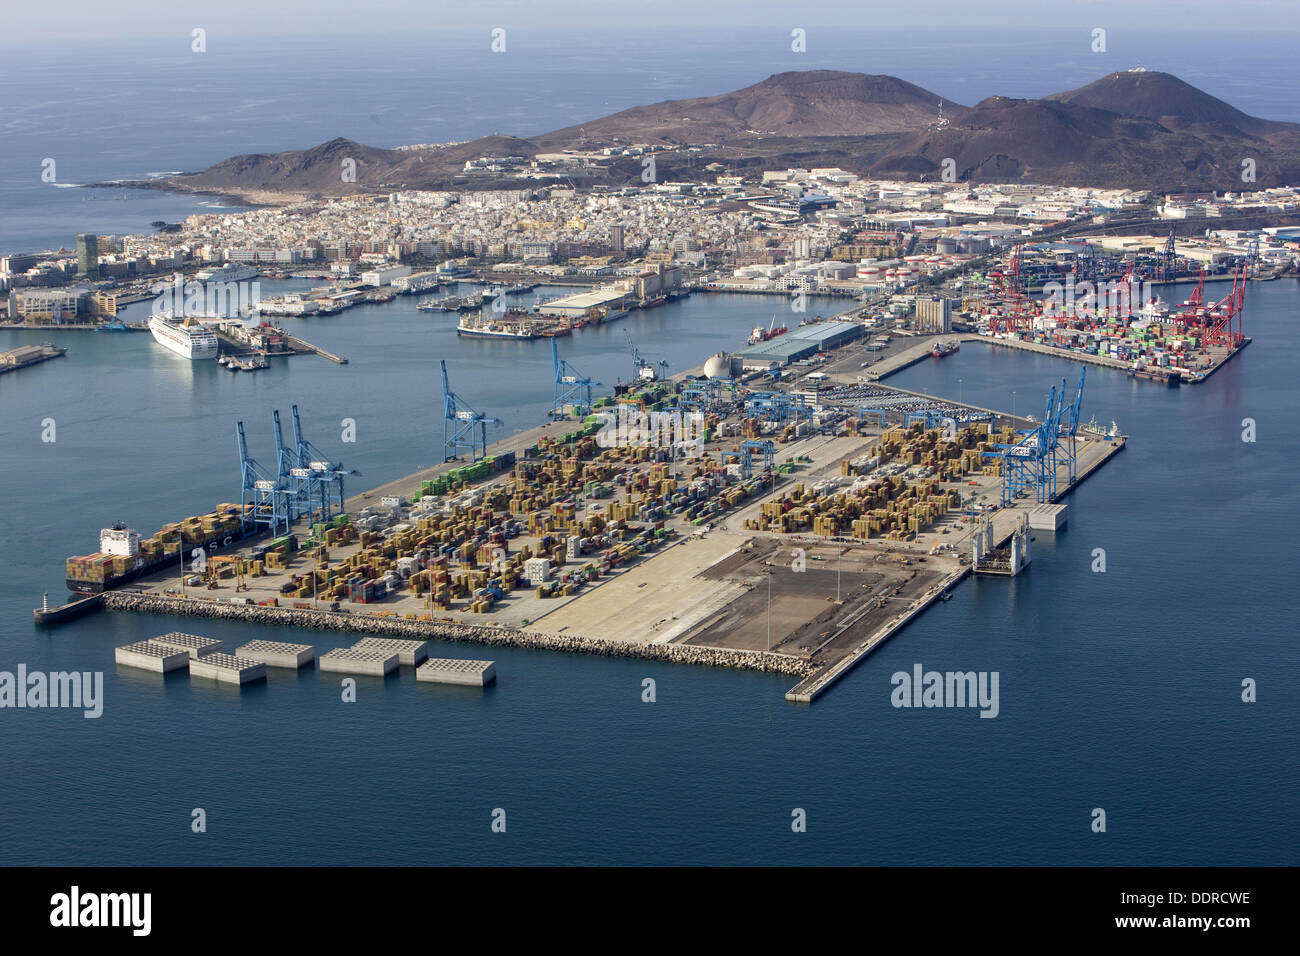 Hafen von Puerto De La Luz, Las Palmas de Gran Canaria, Gran Canaria,  Kanarische Inseln, Spanien Stockfotografie - Alamy